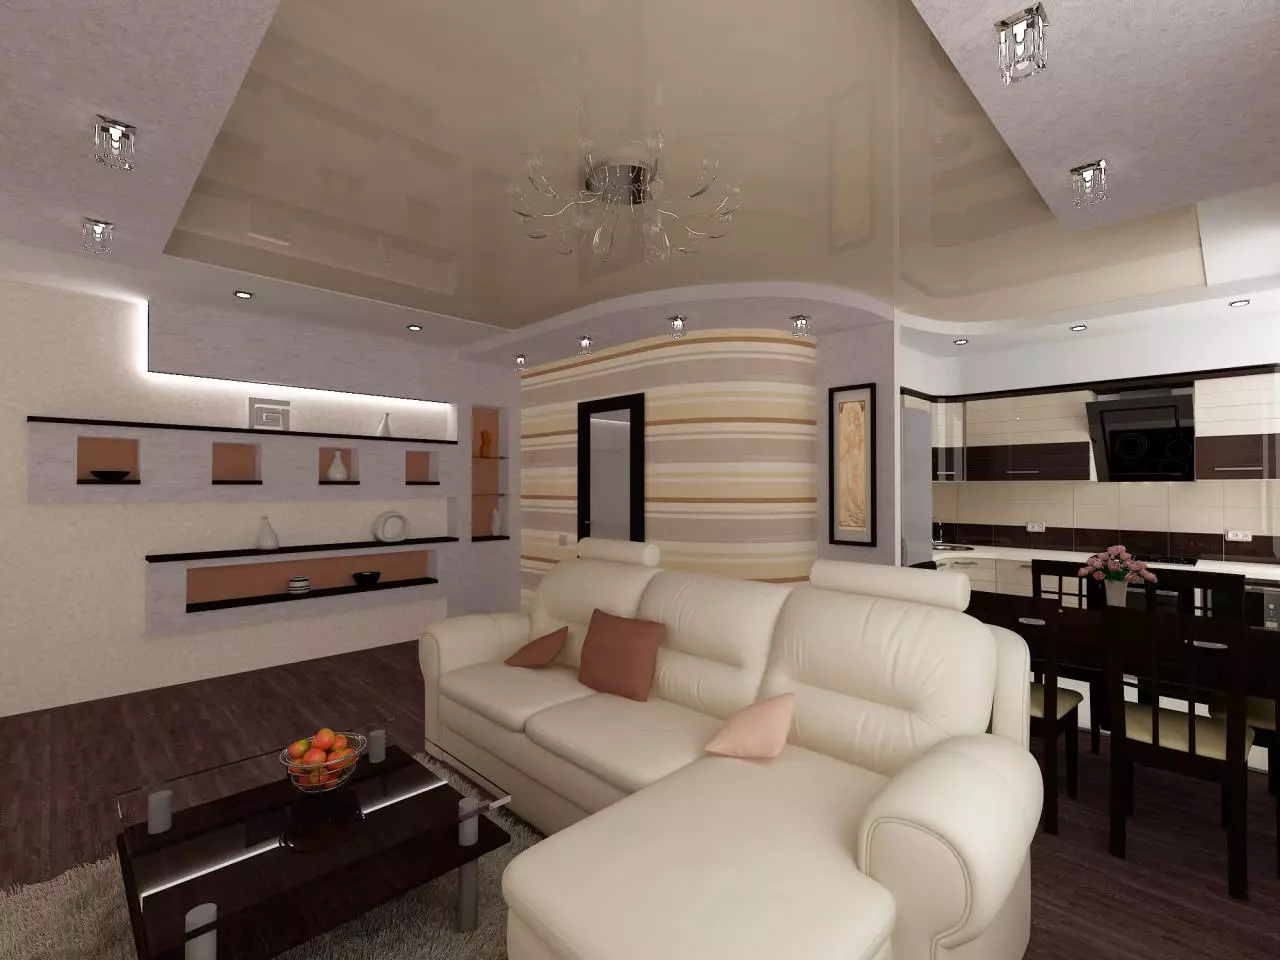 Kuchyň-obývací pokoje 13m². m (58 fotek): Možnosti designu interiéru kuchyně s pohovkou a dalším nábytkem 9516_42